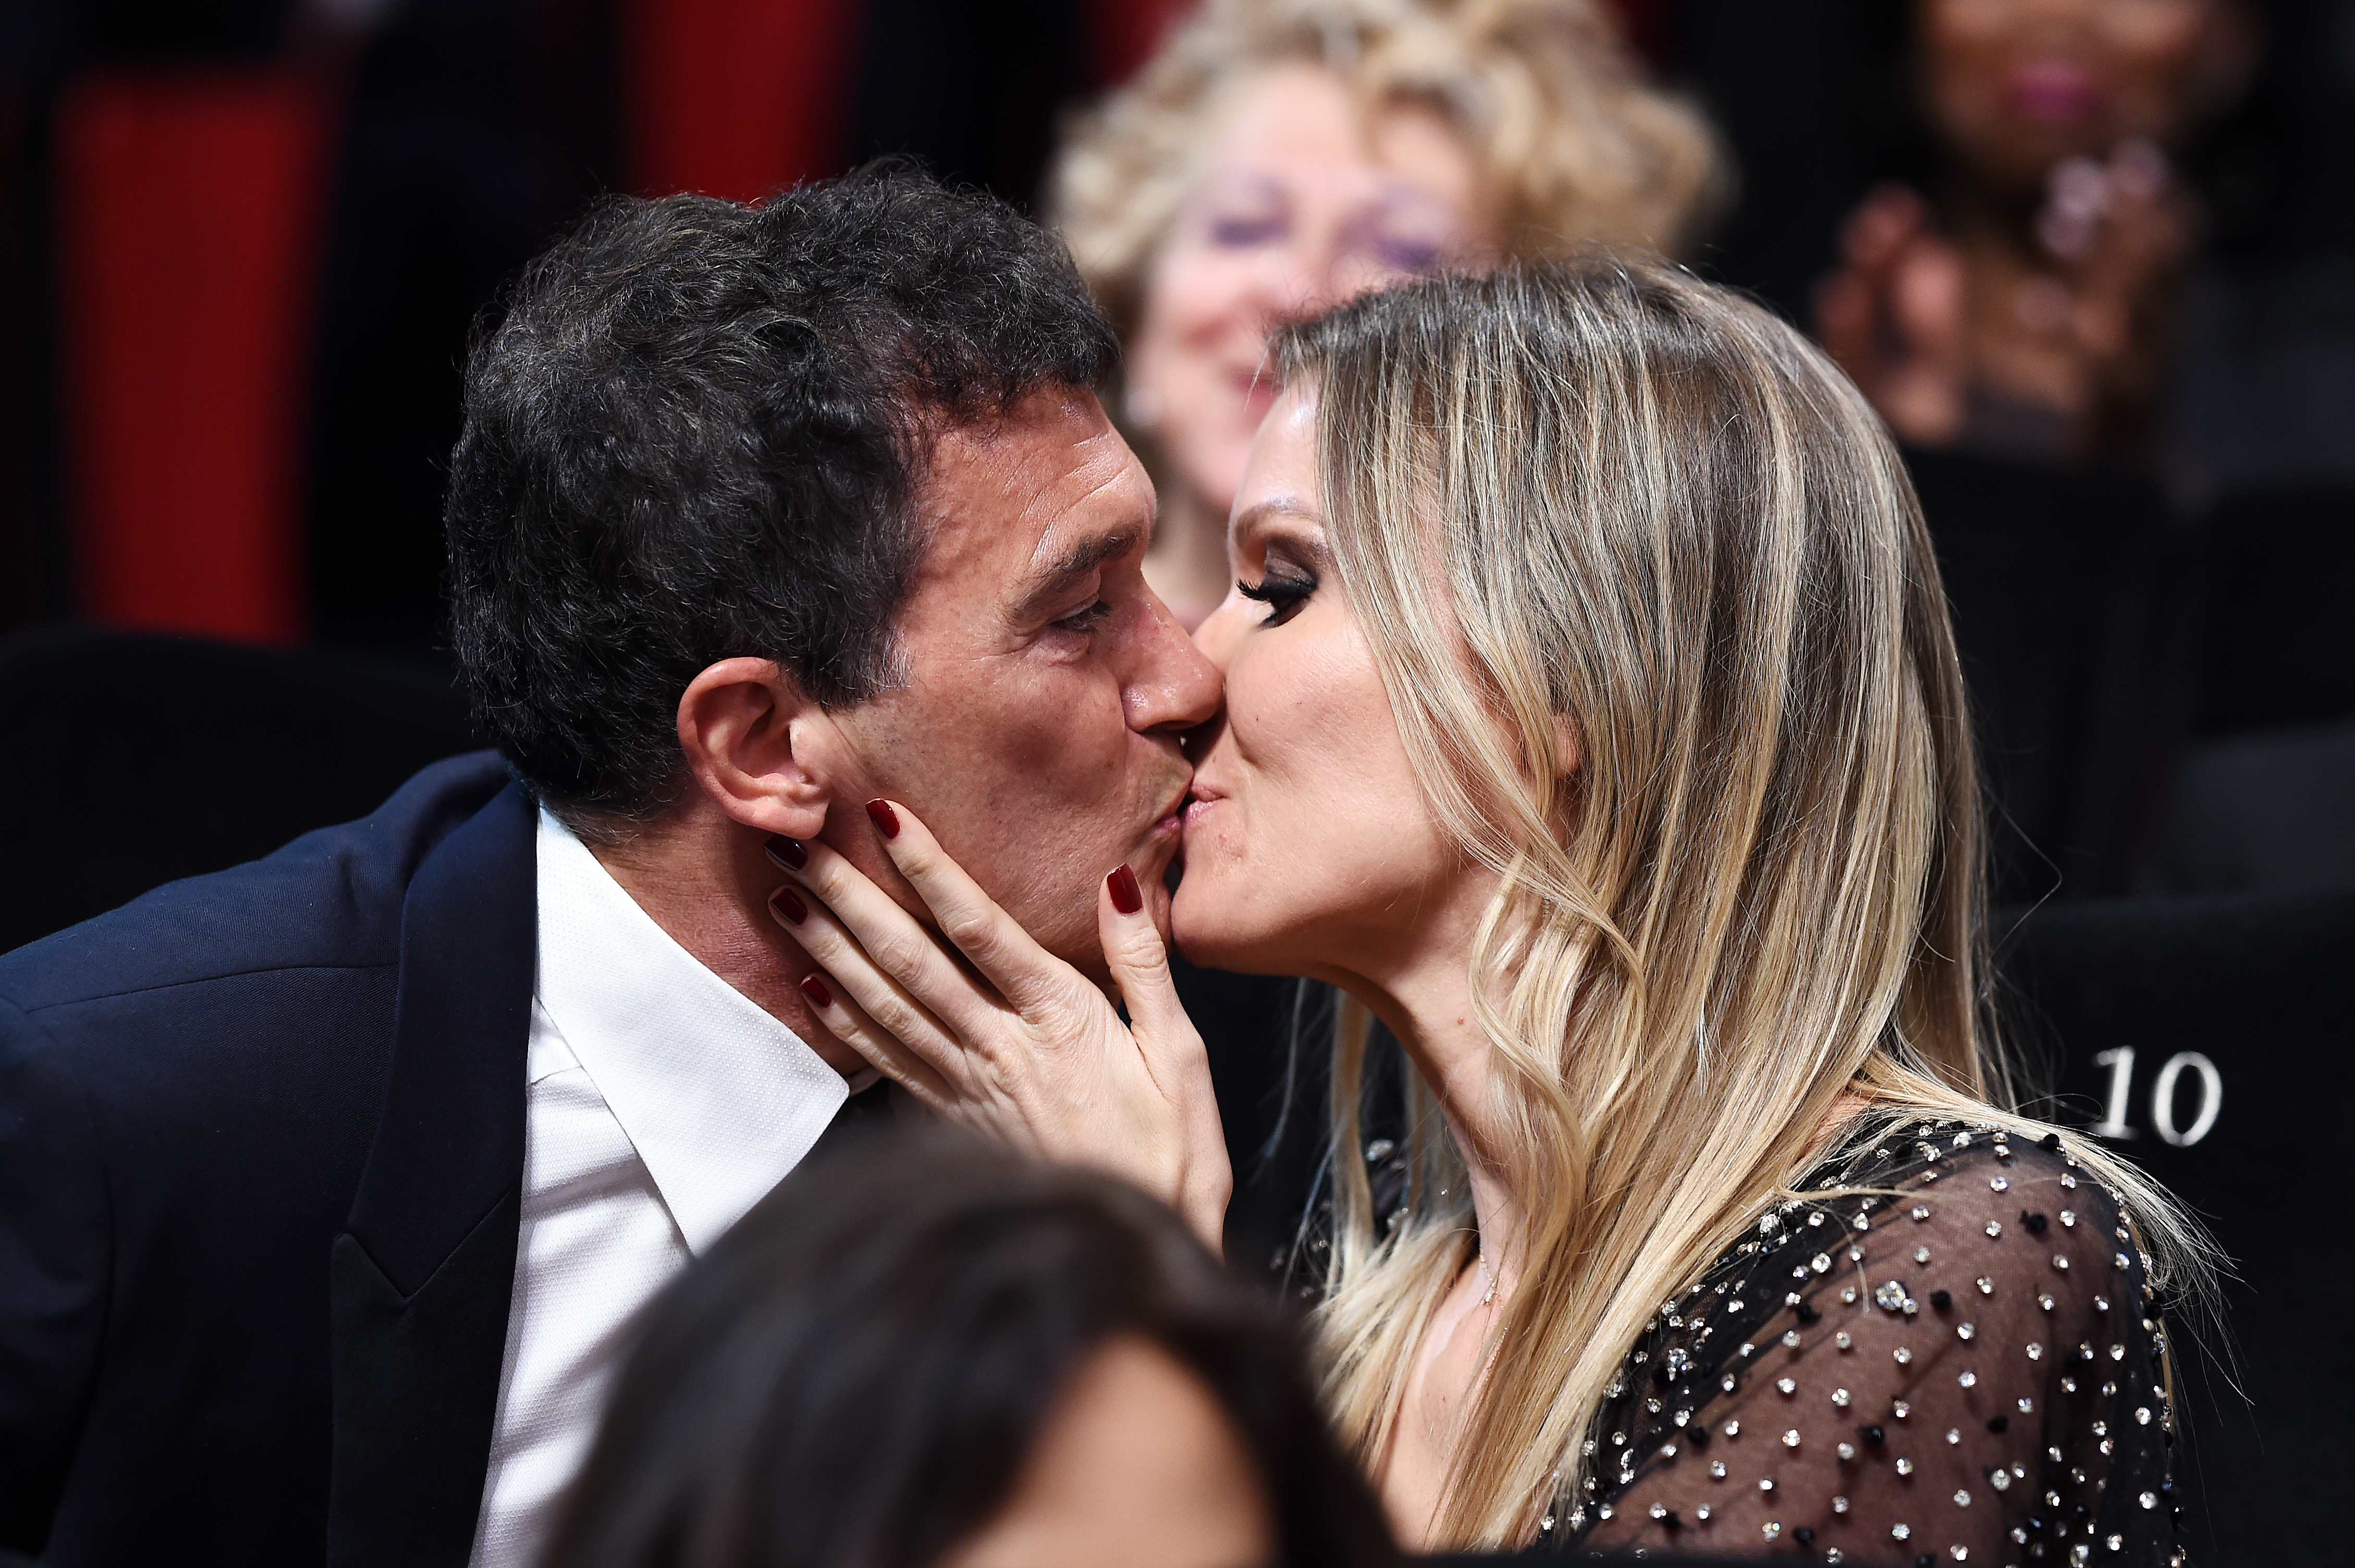 Antonio Banderas et Nicole Kimpel lors de la 72e édition du Festival de Cannes le 25 mai 2019 | Source : Getty Images